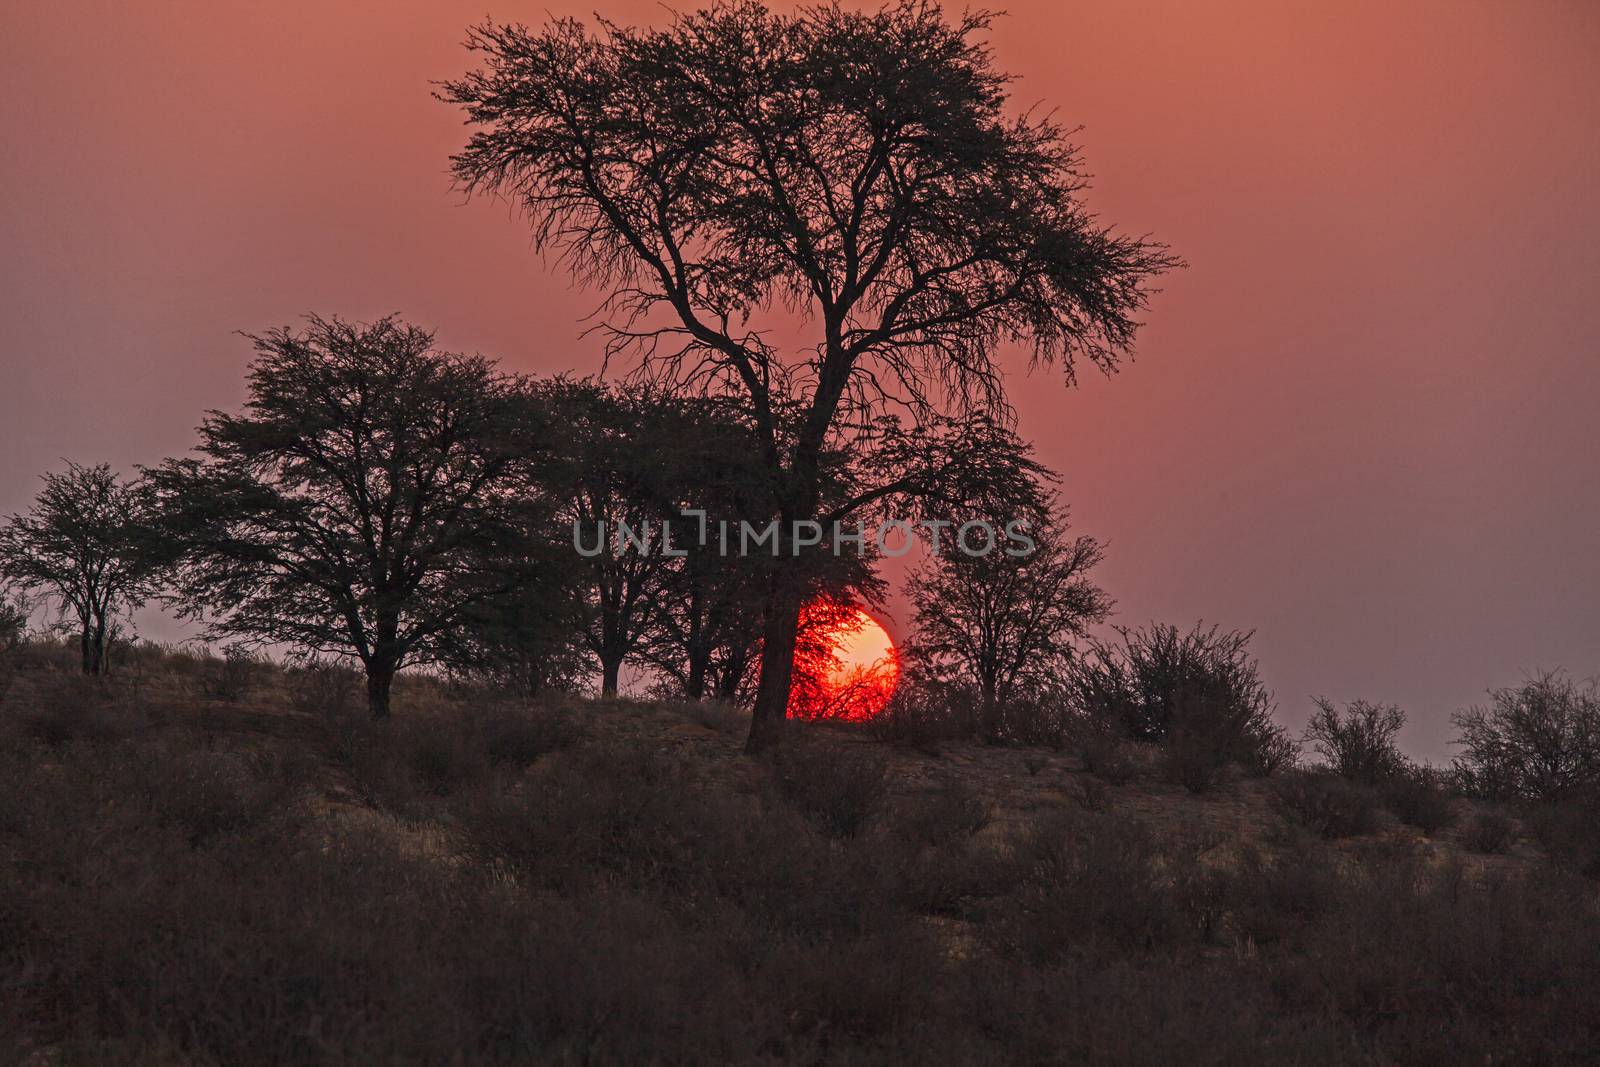 Kalahari Sunset 2 by kobus_peche